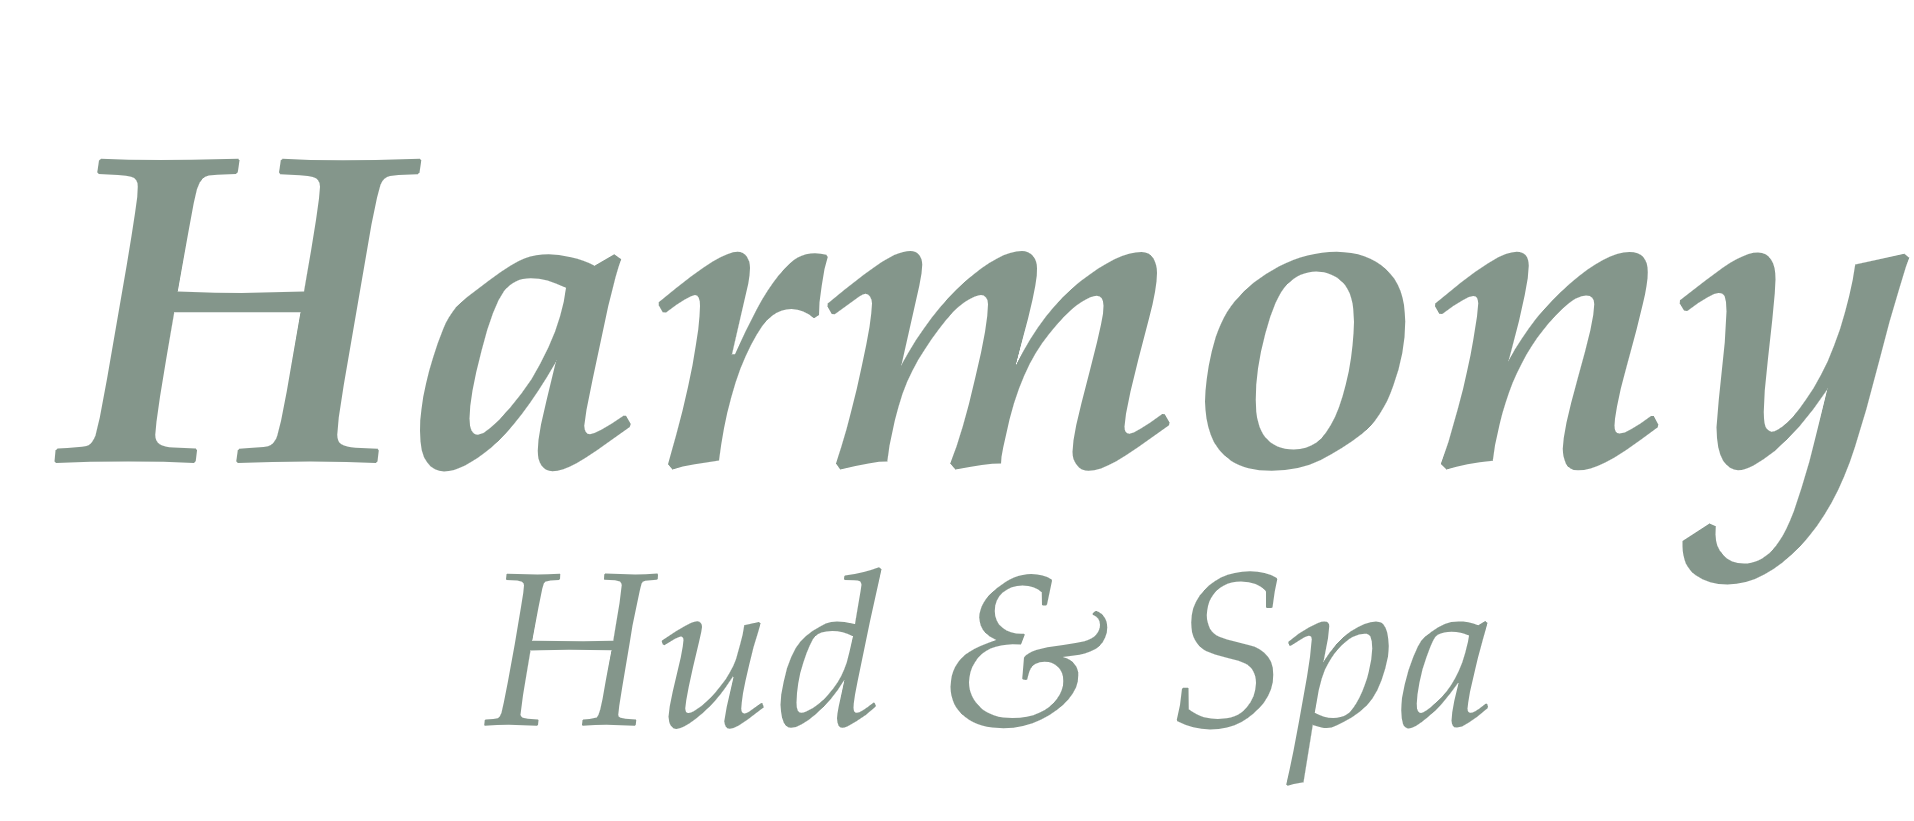 Harmony Hud & Spa (Ninas Harmony Hud & Spa AB)